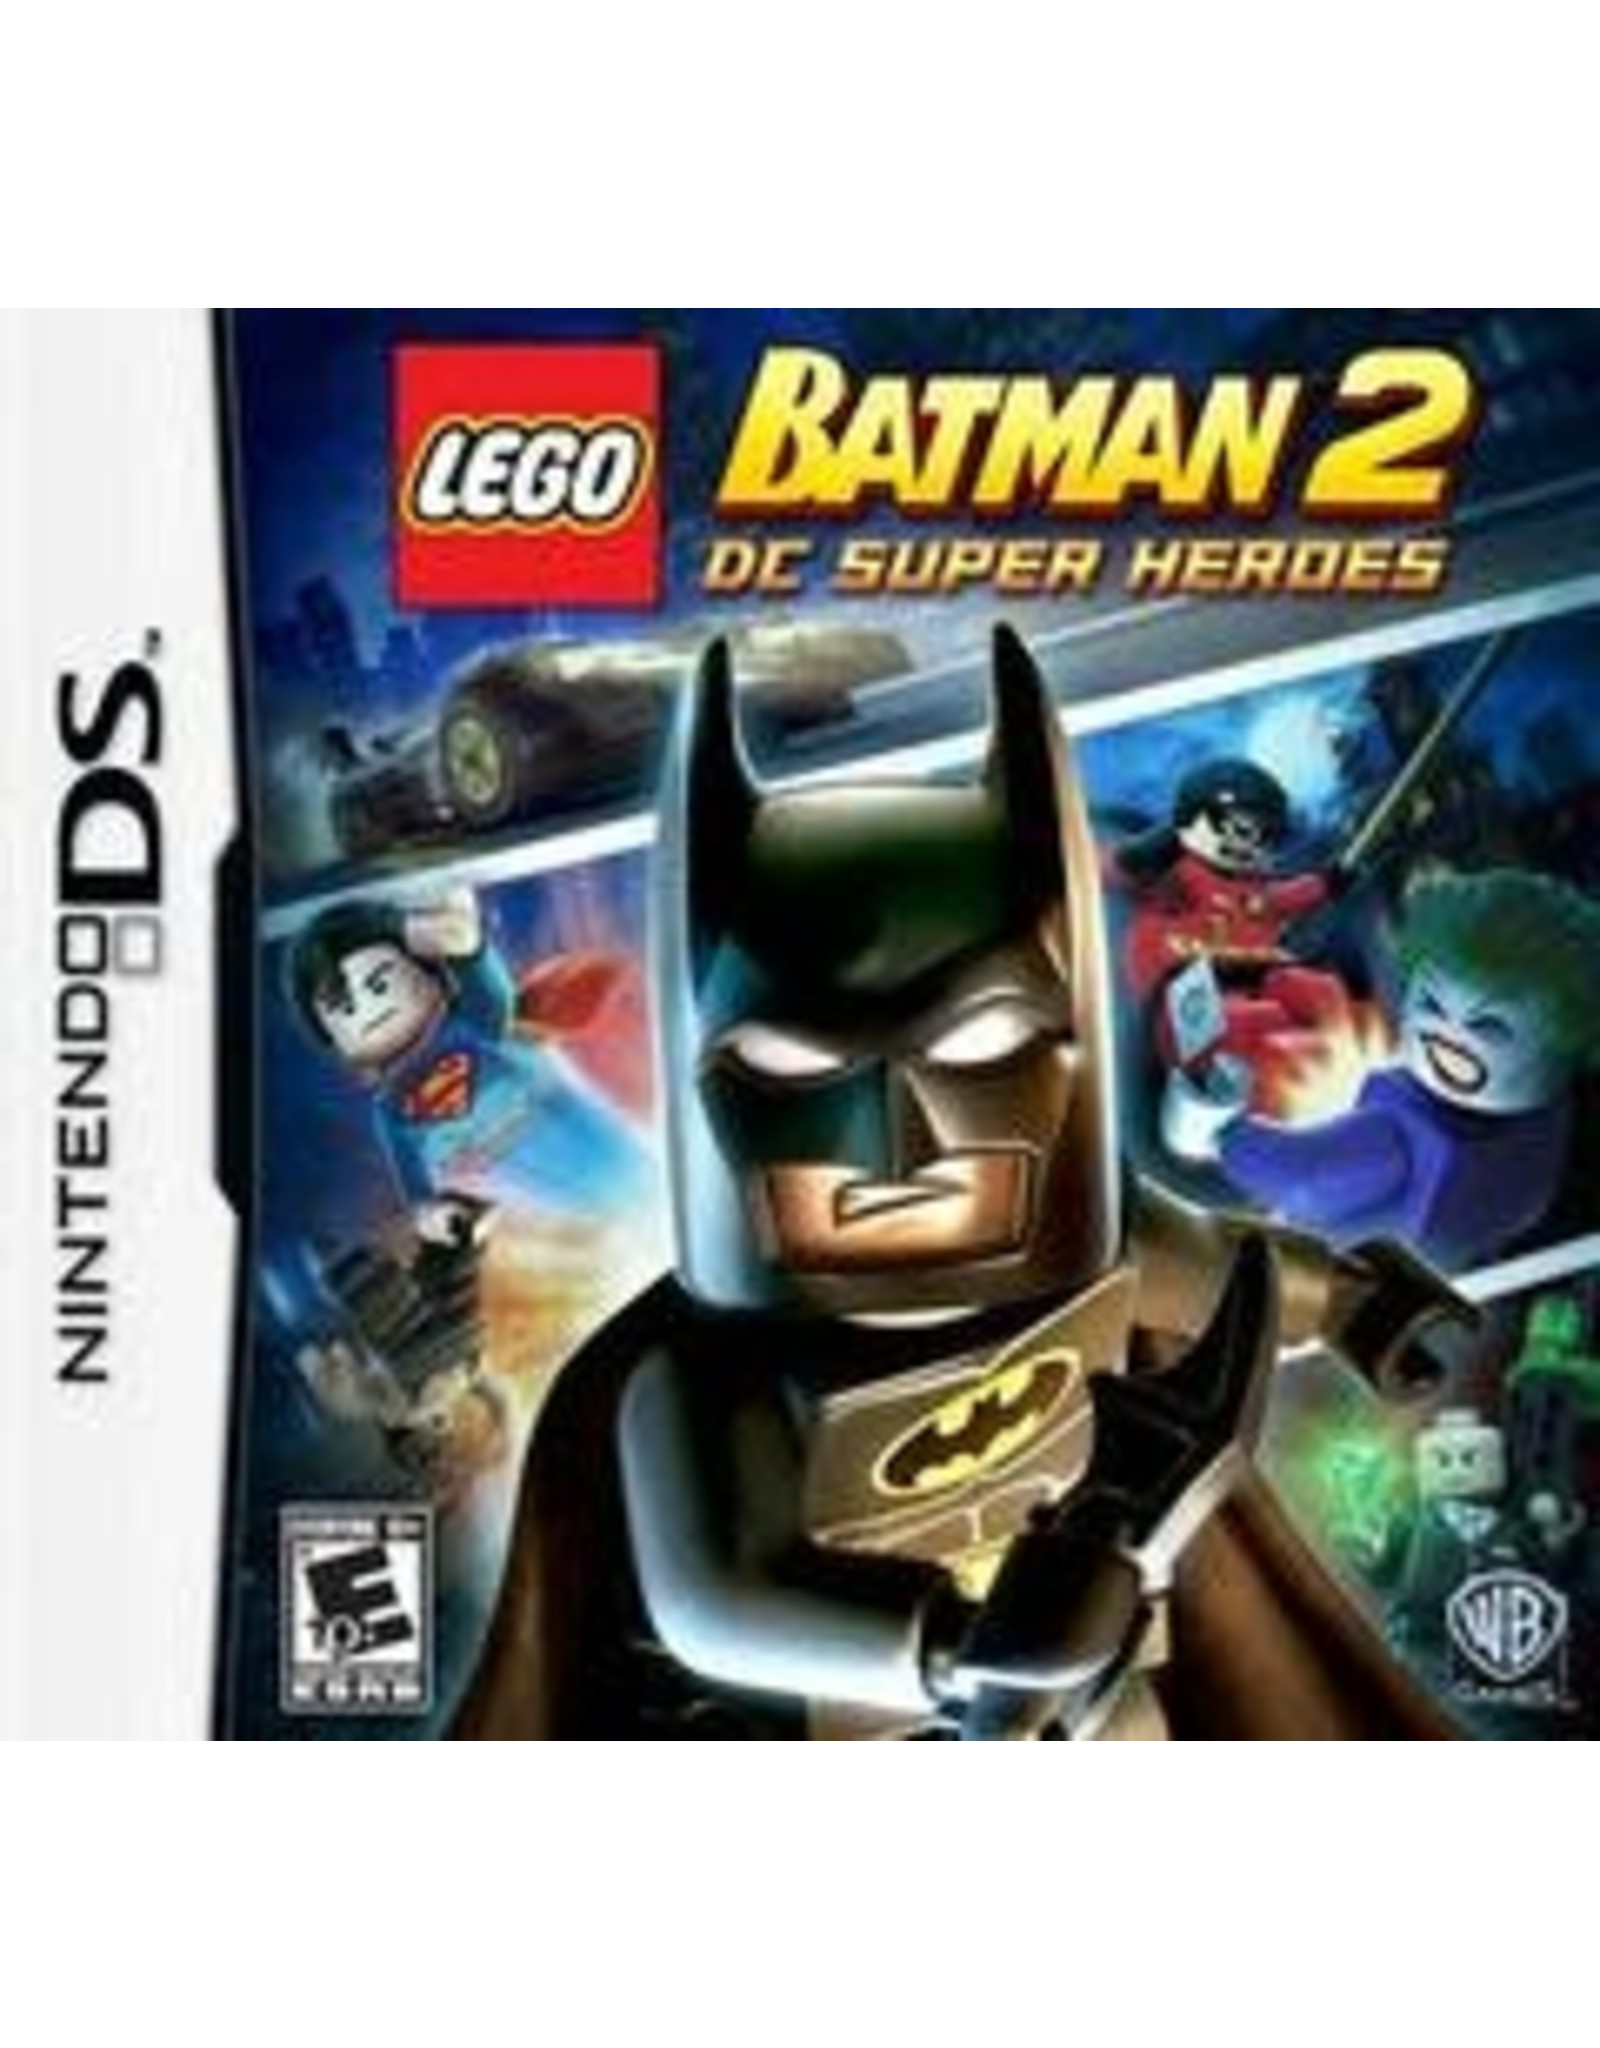 Nintendo DS LEGO Batman 2 (CiB)